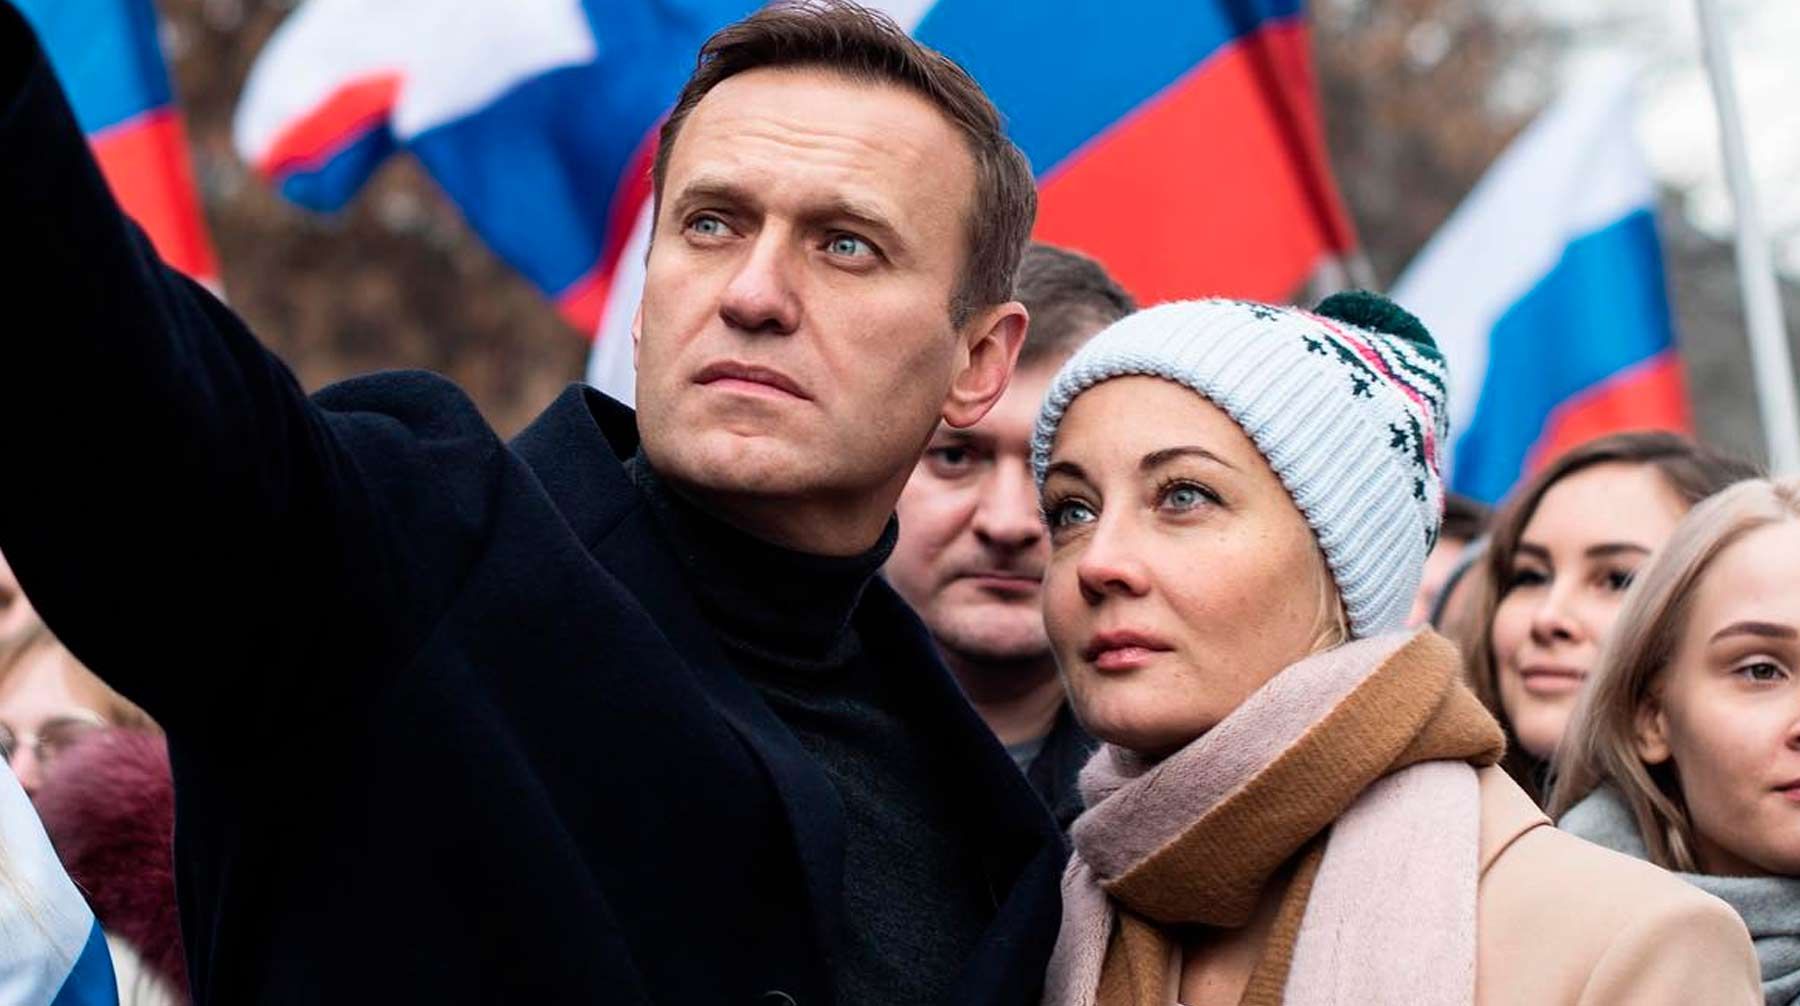 Юлию Навальную задержали на протестах в Москве 31 января 2021: видео